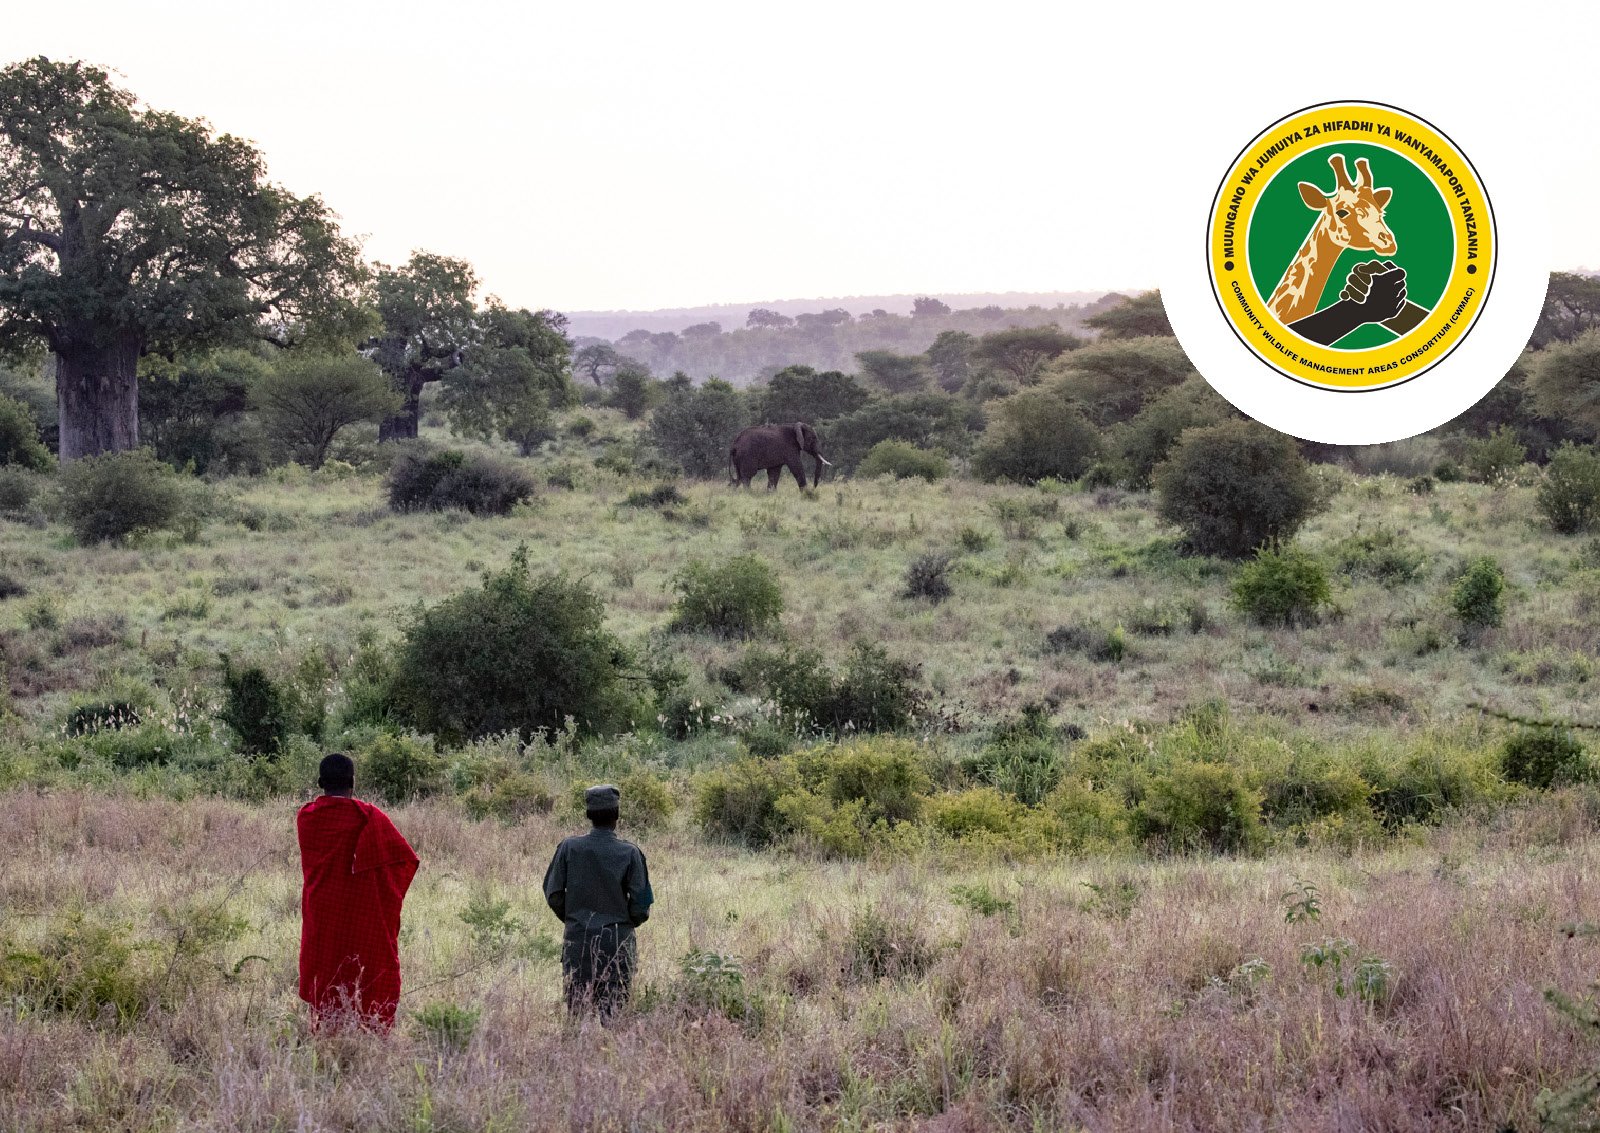 Community Wildlife Management Area Consortium of Tanzania